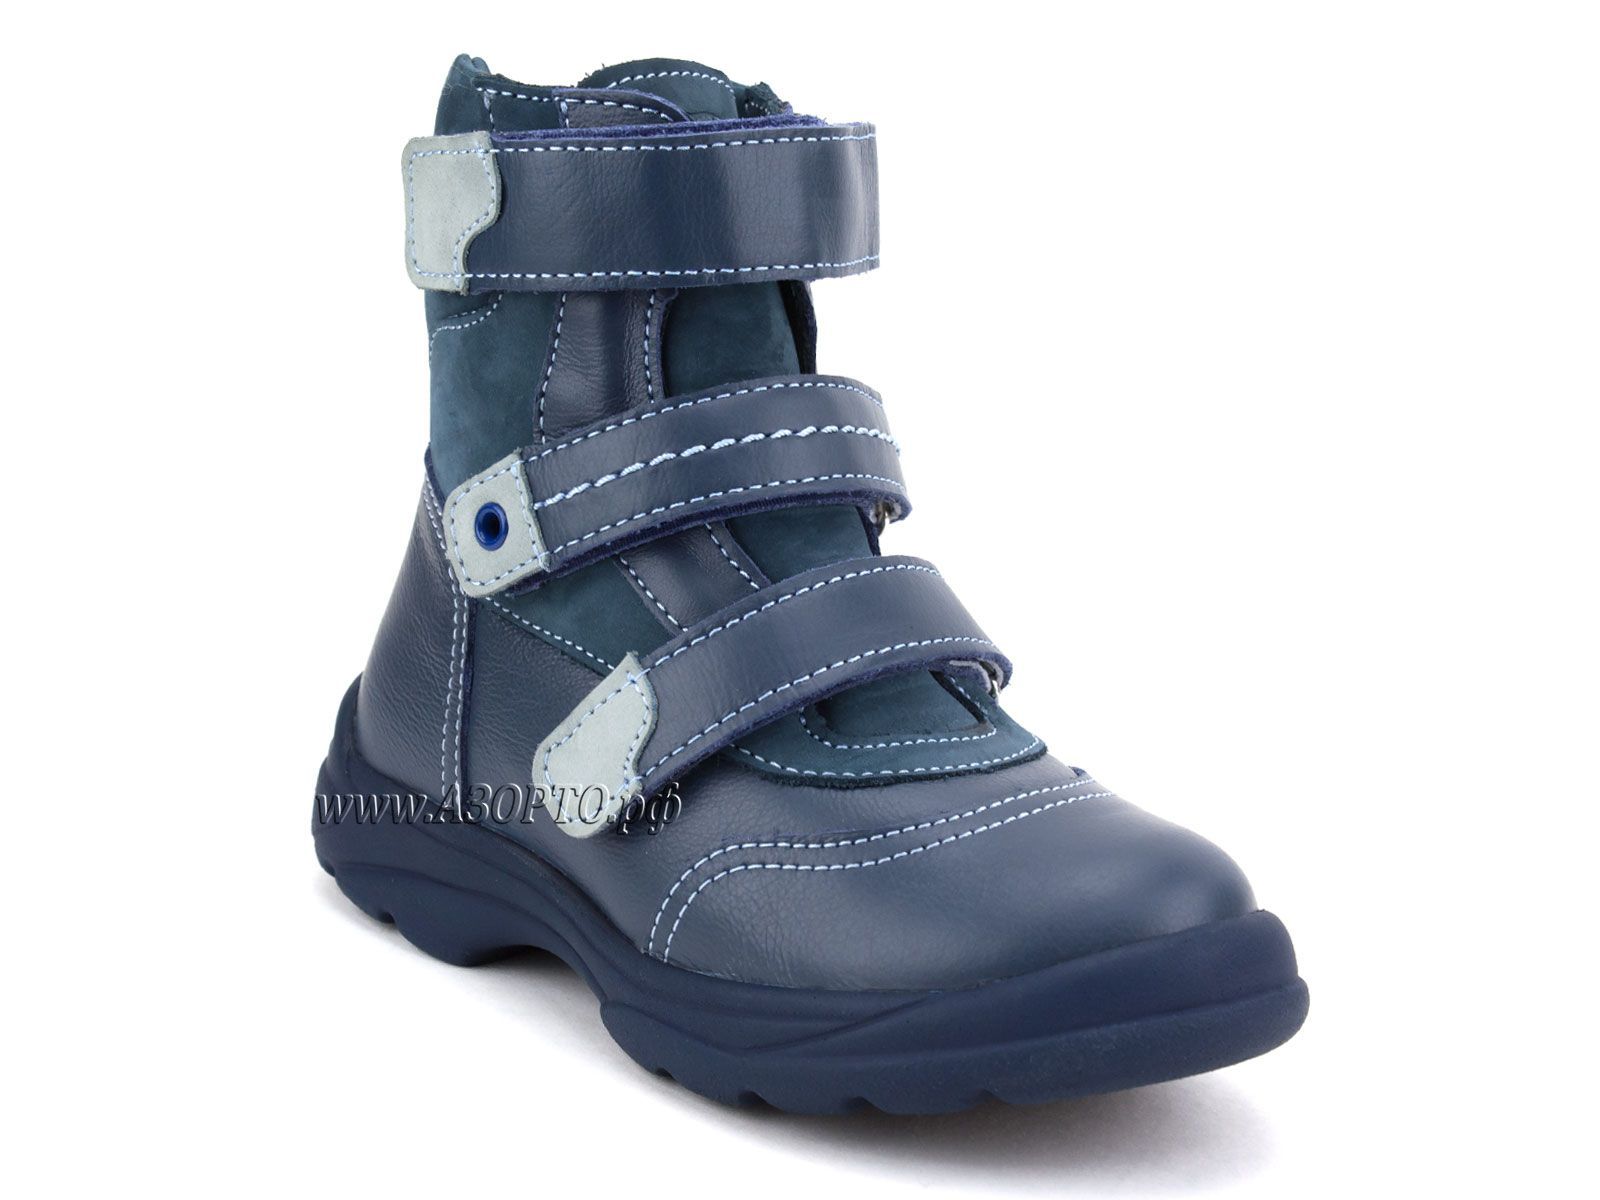 210-3,13,09 Тотто (Totto), ботинки детские зимние ортопедические профилактические, натуральный мех, кожа, джинс, голубой.